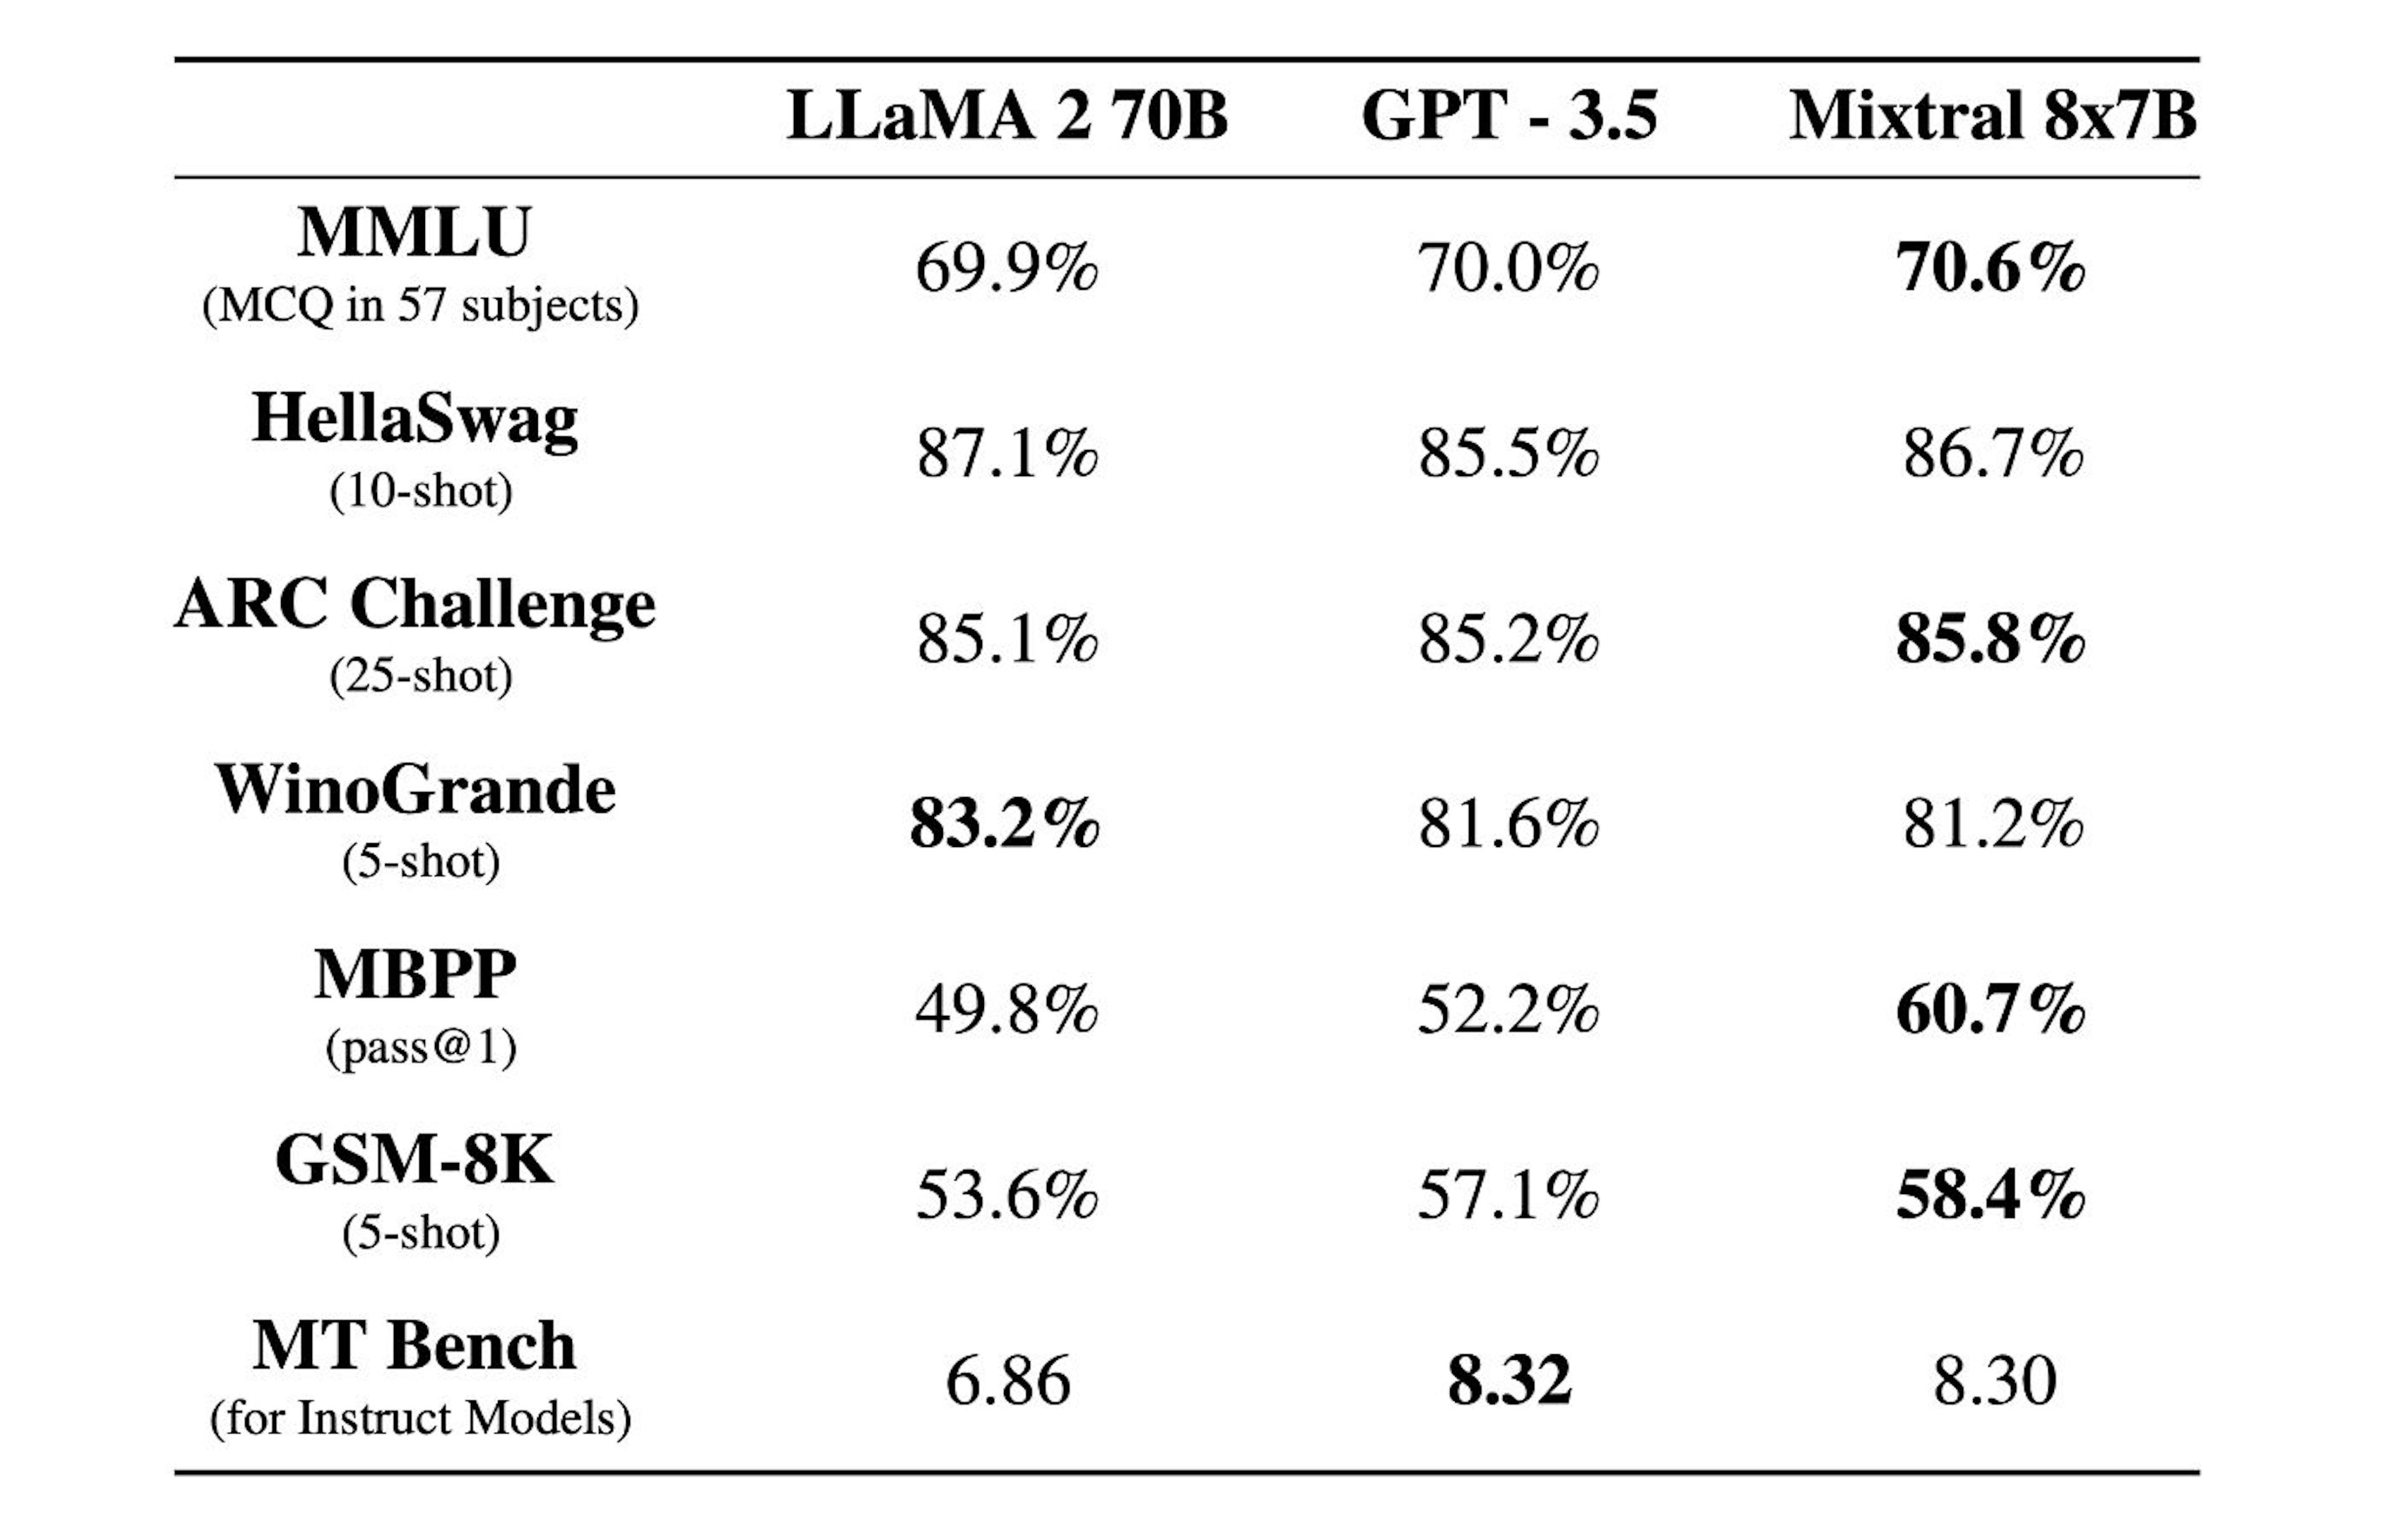 Vergleich zwischen Mistral, LLaMA und GPT (von https://mistral.ai/news/mixtral-of-experts)